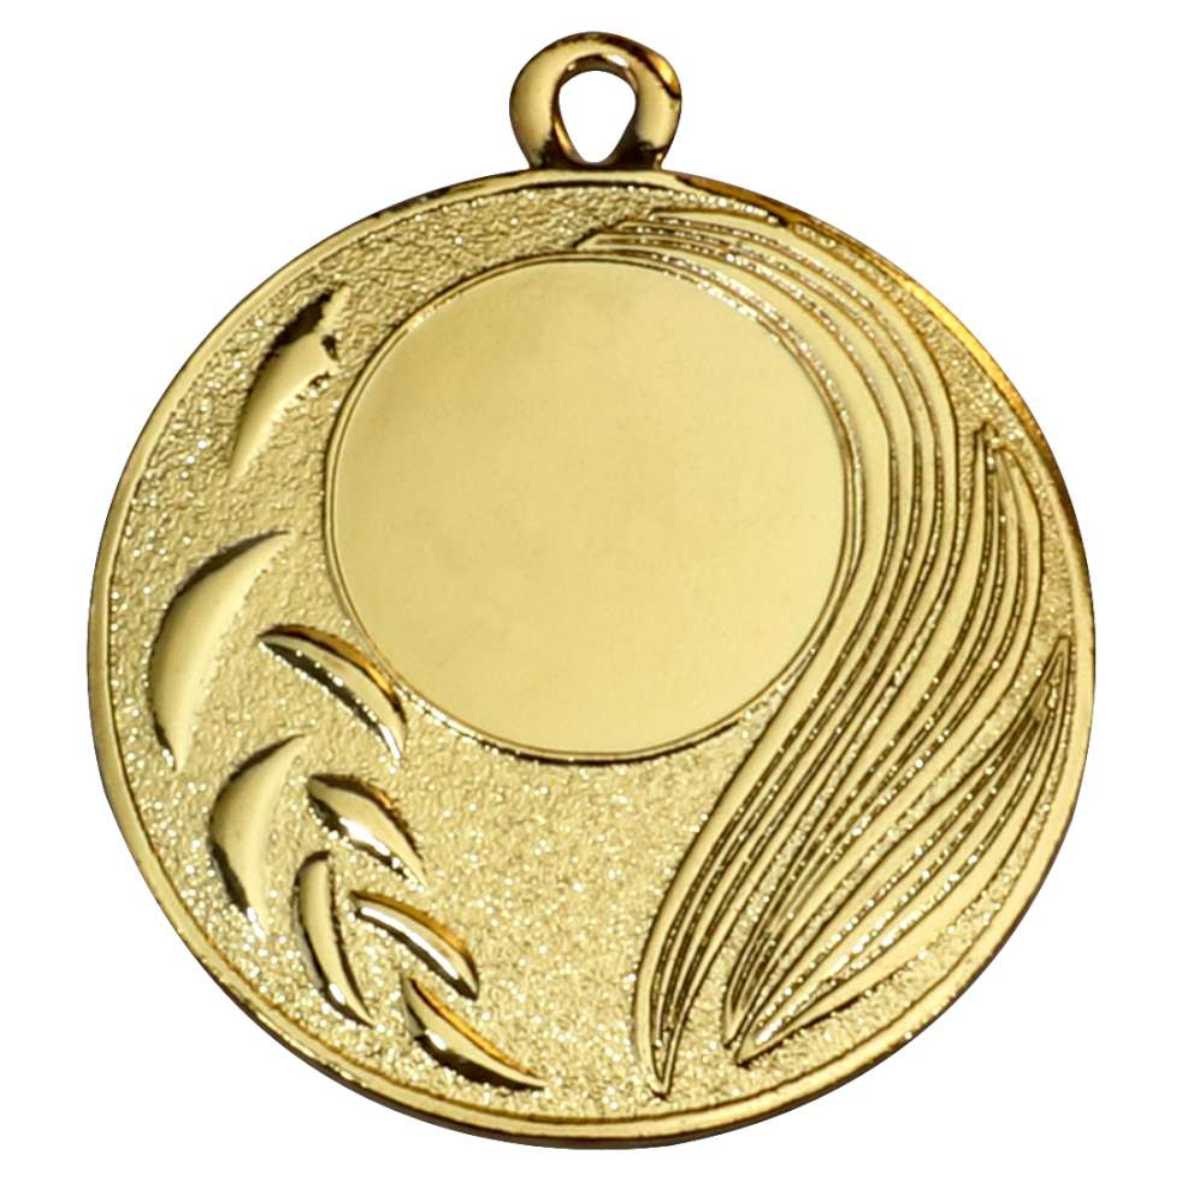 Eisen Medaille 50mm Lieferbar in Gold-Silber - Bronze